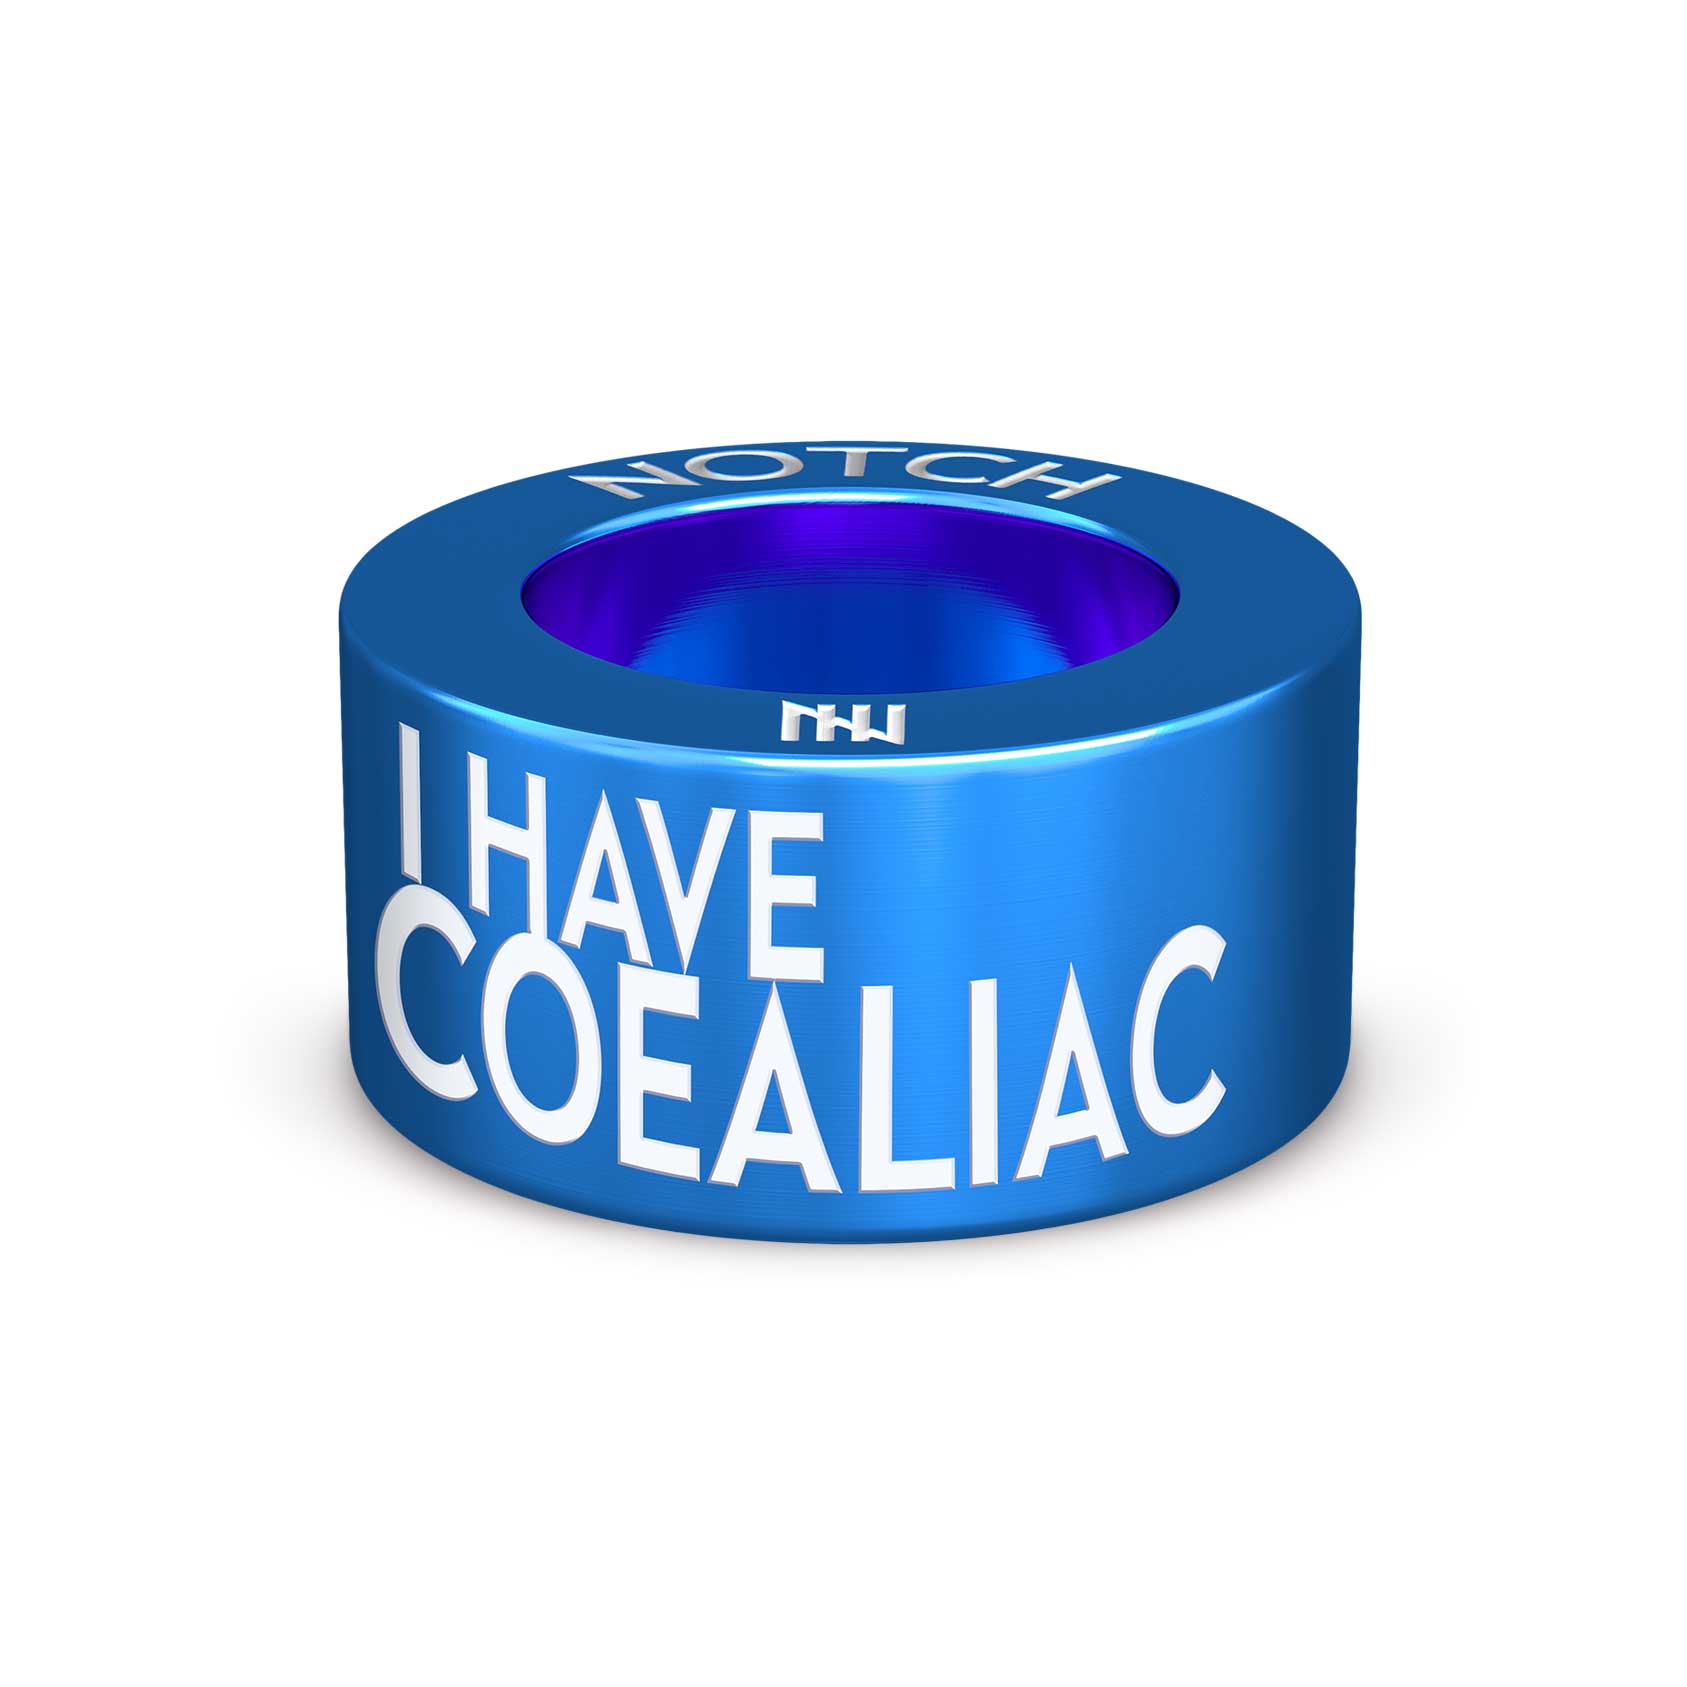 Coeliac / Celiac NOTCH Charm